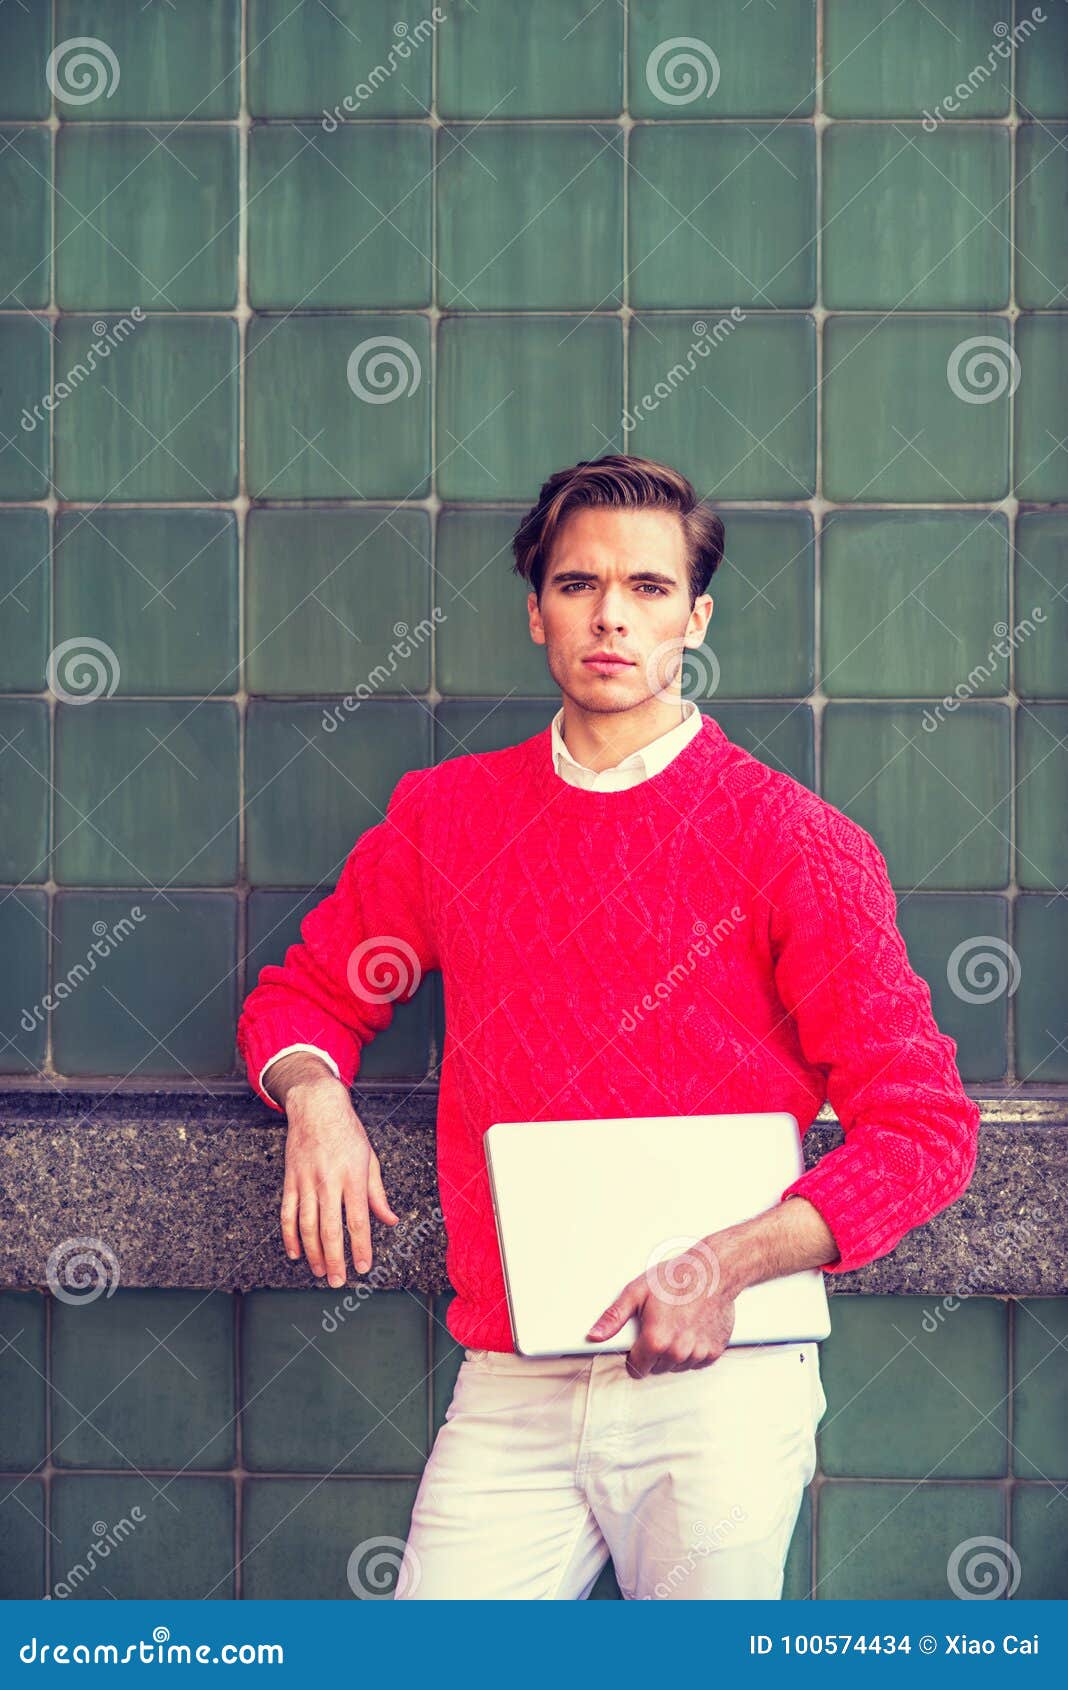 Porträt des amerikanischen Studenten in New York. Der amerikanische Student, der in New York, tragender roter Strickpulli, weiße Hosen, Laptop-Computer halten, auf dem Campus stehend gegen grüne Wand, vorwärts schauend studiert, Instagram filterte Effekt